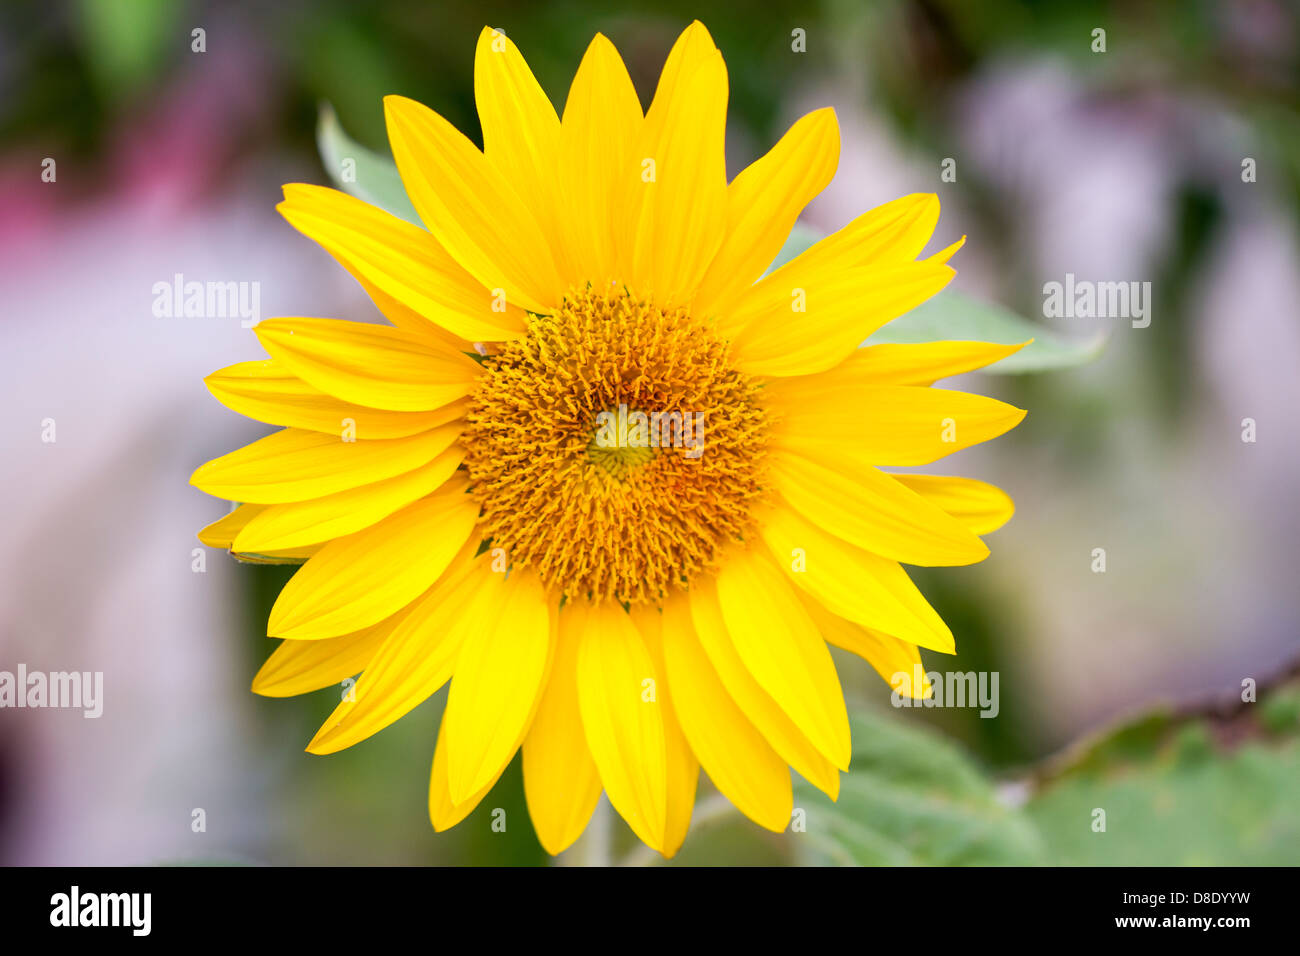 Sunflower using macro photography Stock Photo